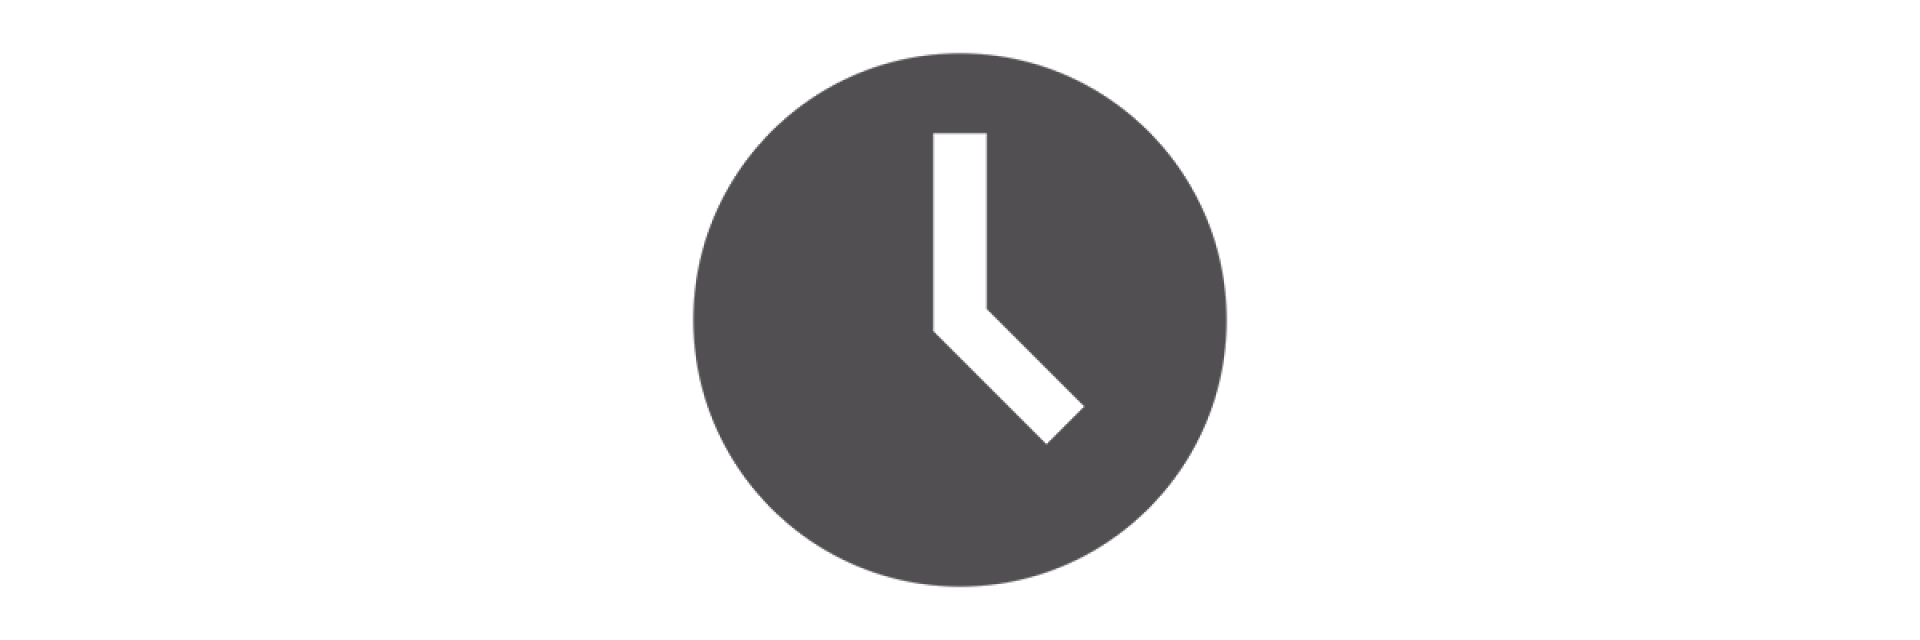 icone d'une horloge